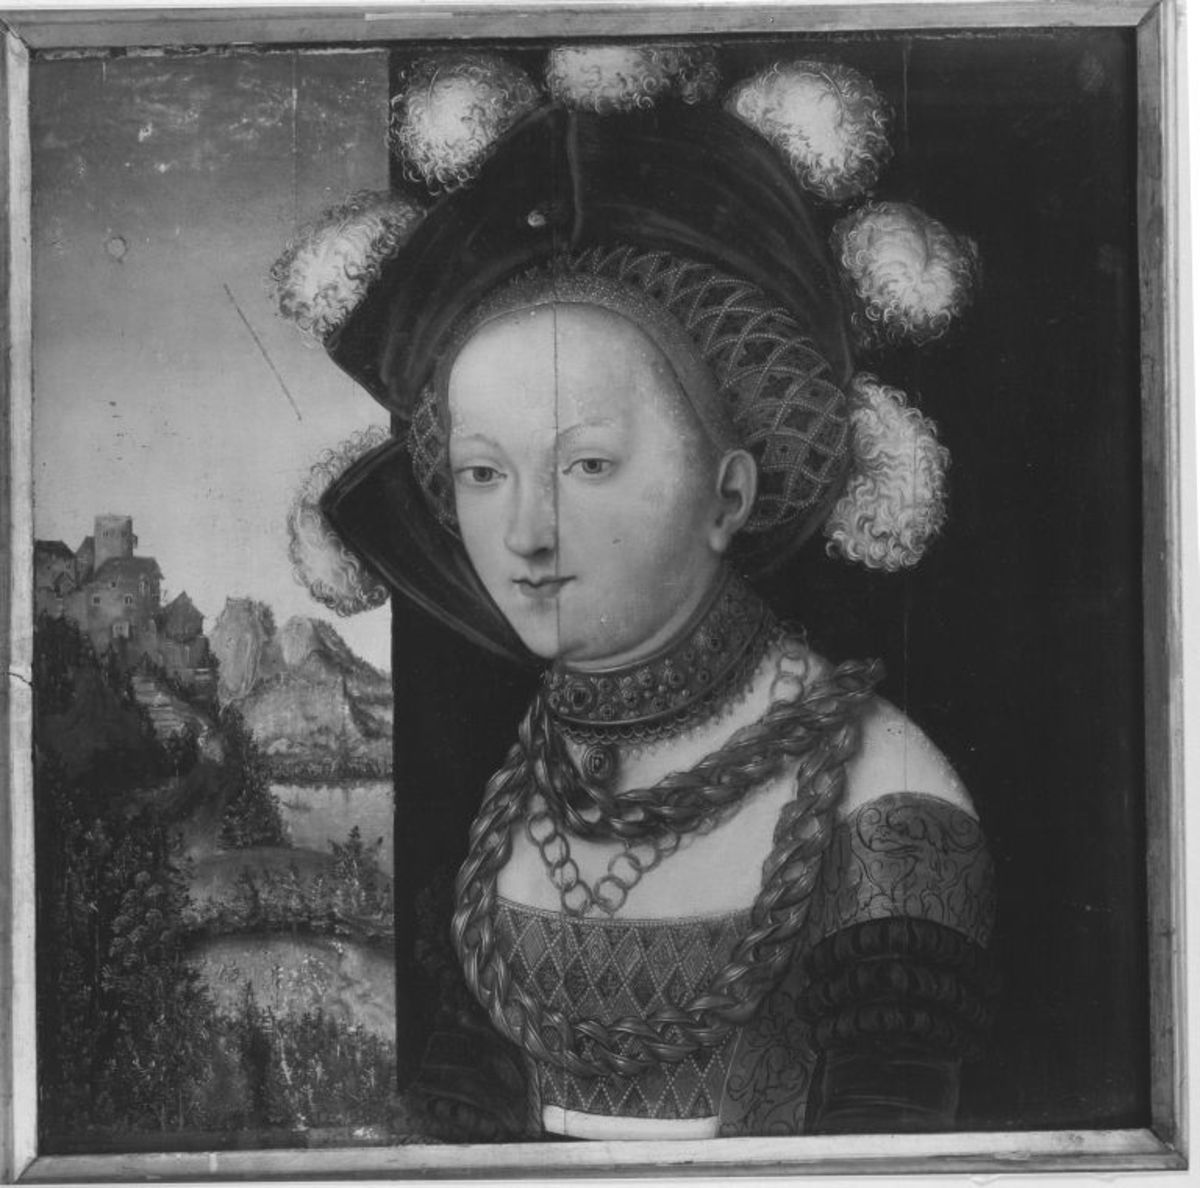 Bildnis einer fürstlich gekleideten jungen Dame (Salome-Fragment)